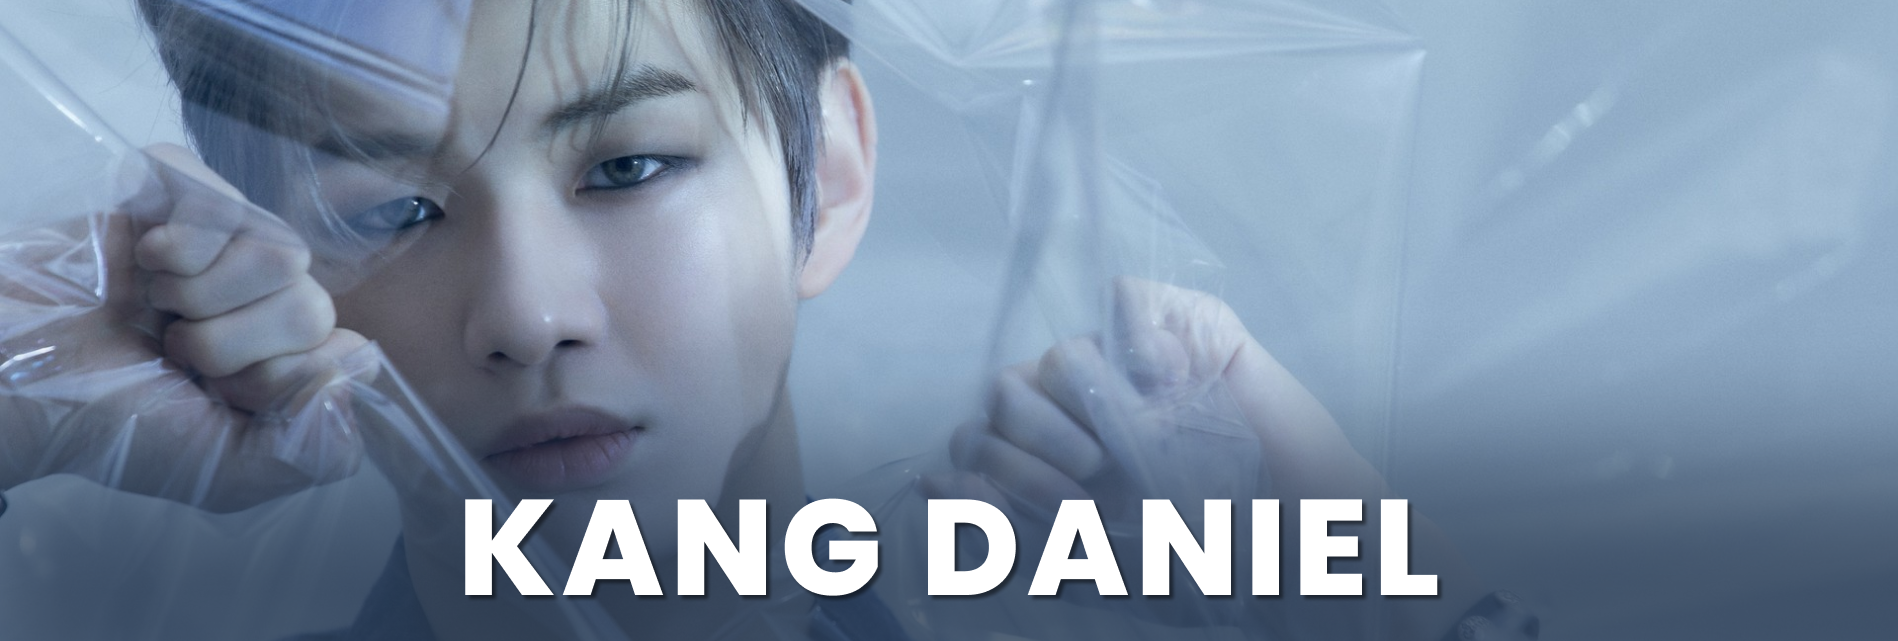 Kang Daniel profile